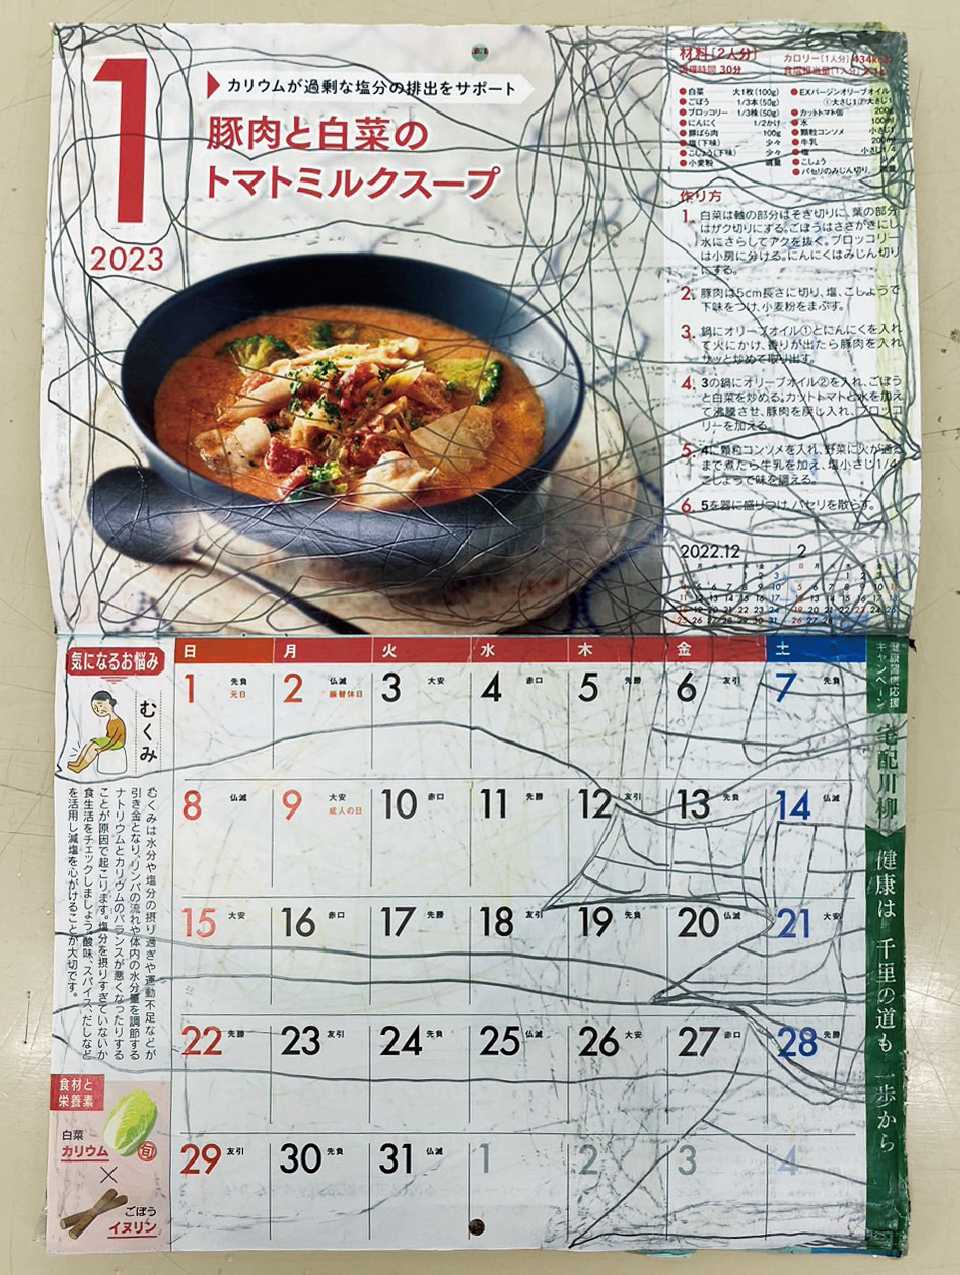 【写真】2023年1月のカレンダー全面。上部には「豚肉と白菜のトマトミルクスープ」の料理写真とレシピ、下部にはカレンダーの表が掲載されている。鉛筆の線が「1月」の「1」の字のまわりなどを囲んで縦横に走り、表の木、金、土曜3列分のスペースを使って「歯医者」の文字が書かれている。